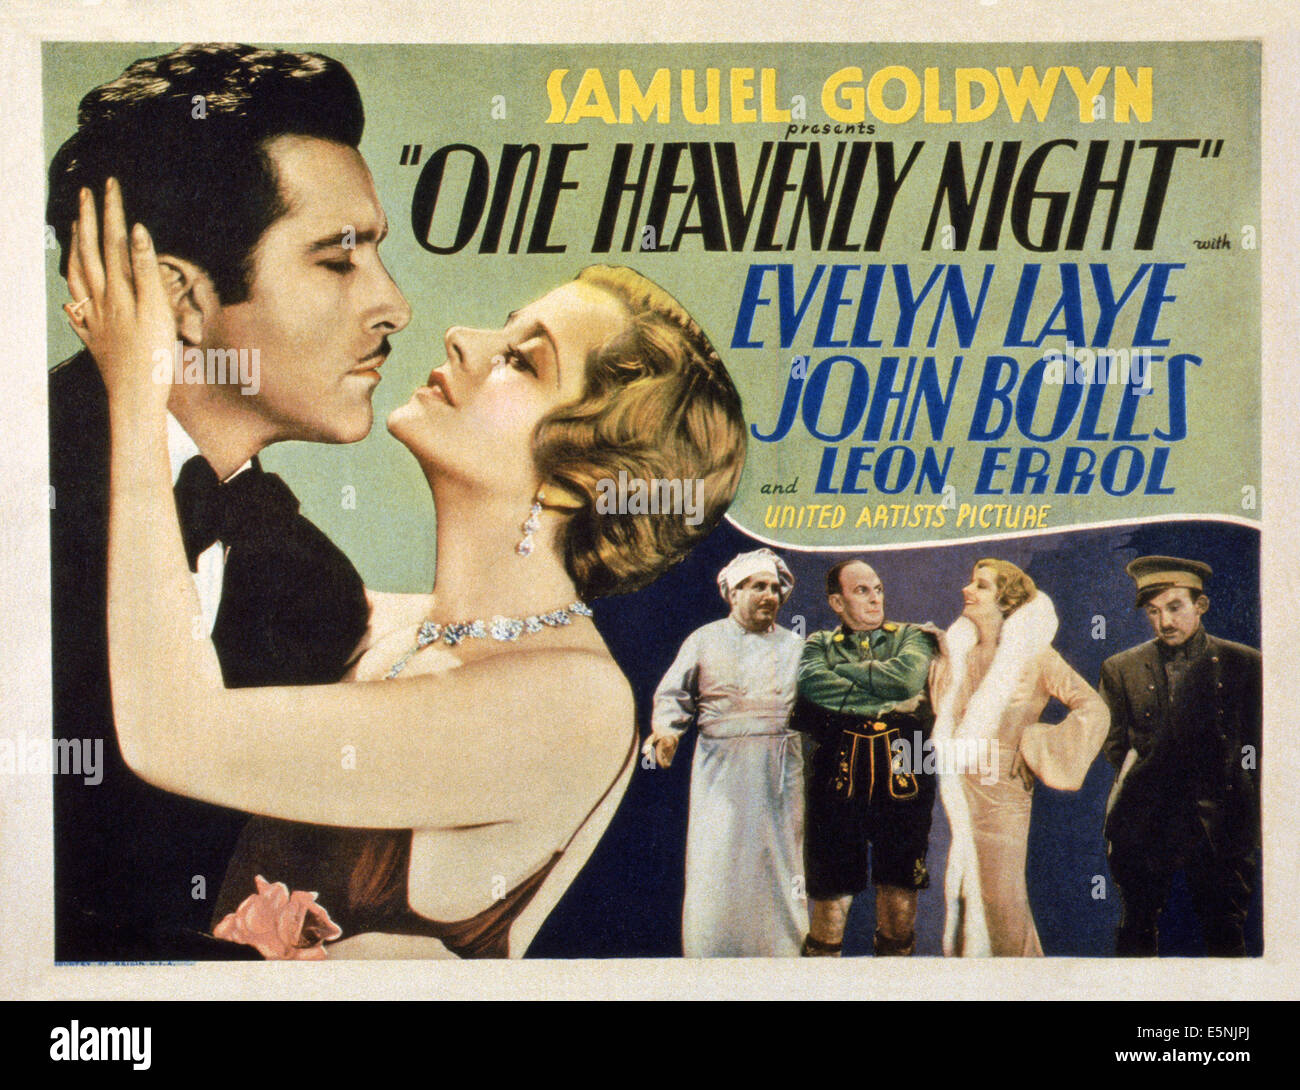 Une nuit, lobbycard céleste nous, John Boles (à gauche), Evelyn Laye (deuxième à gauche)), Leon Errol (troisième à droite), 1931 Banque D'Images